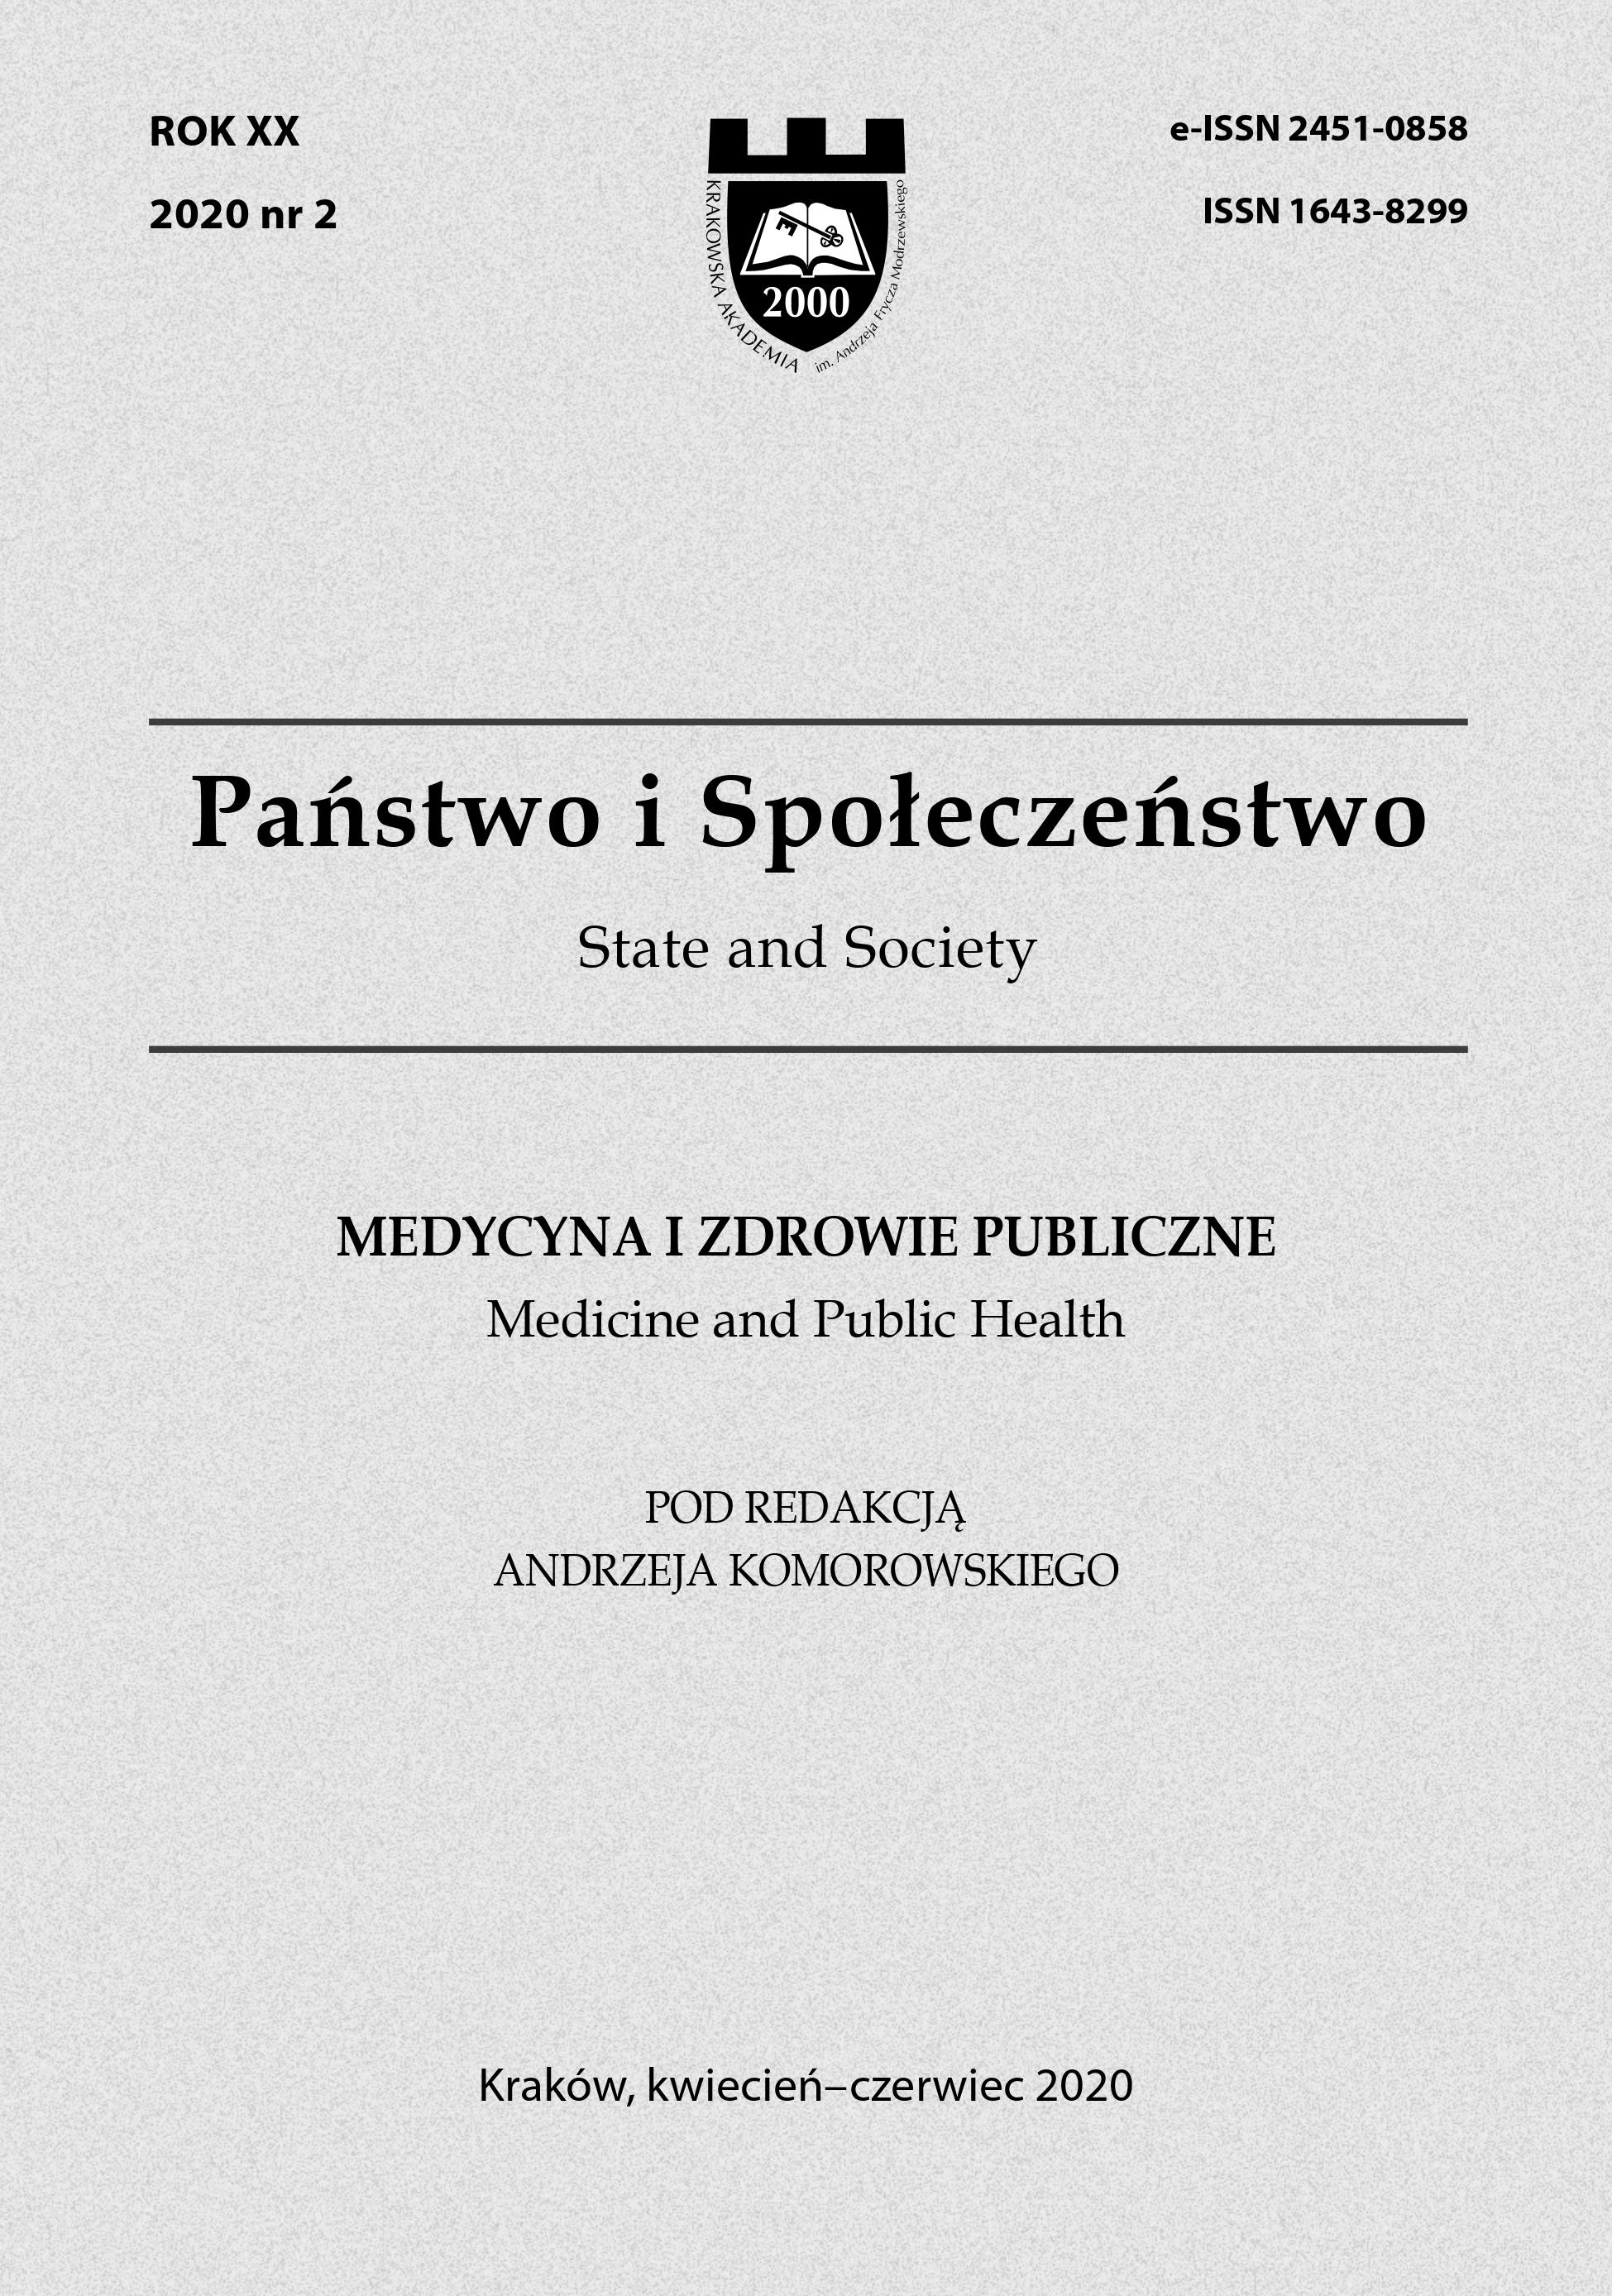 Cystektomia radykalna w Polsce – co się zmieniło przez 15 lat. Ocena porównawcza według skali pTNM na podstawie wybranych prac